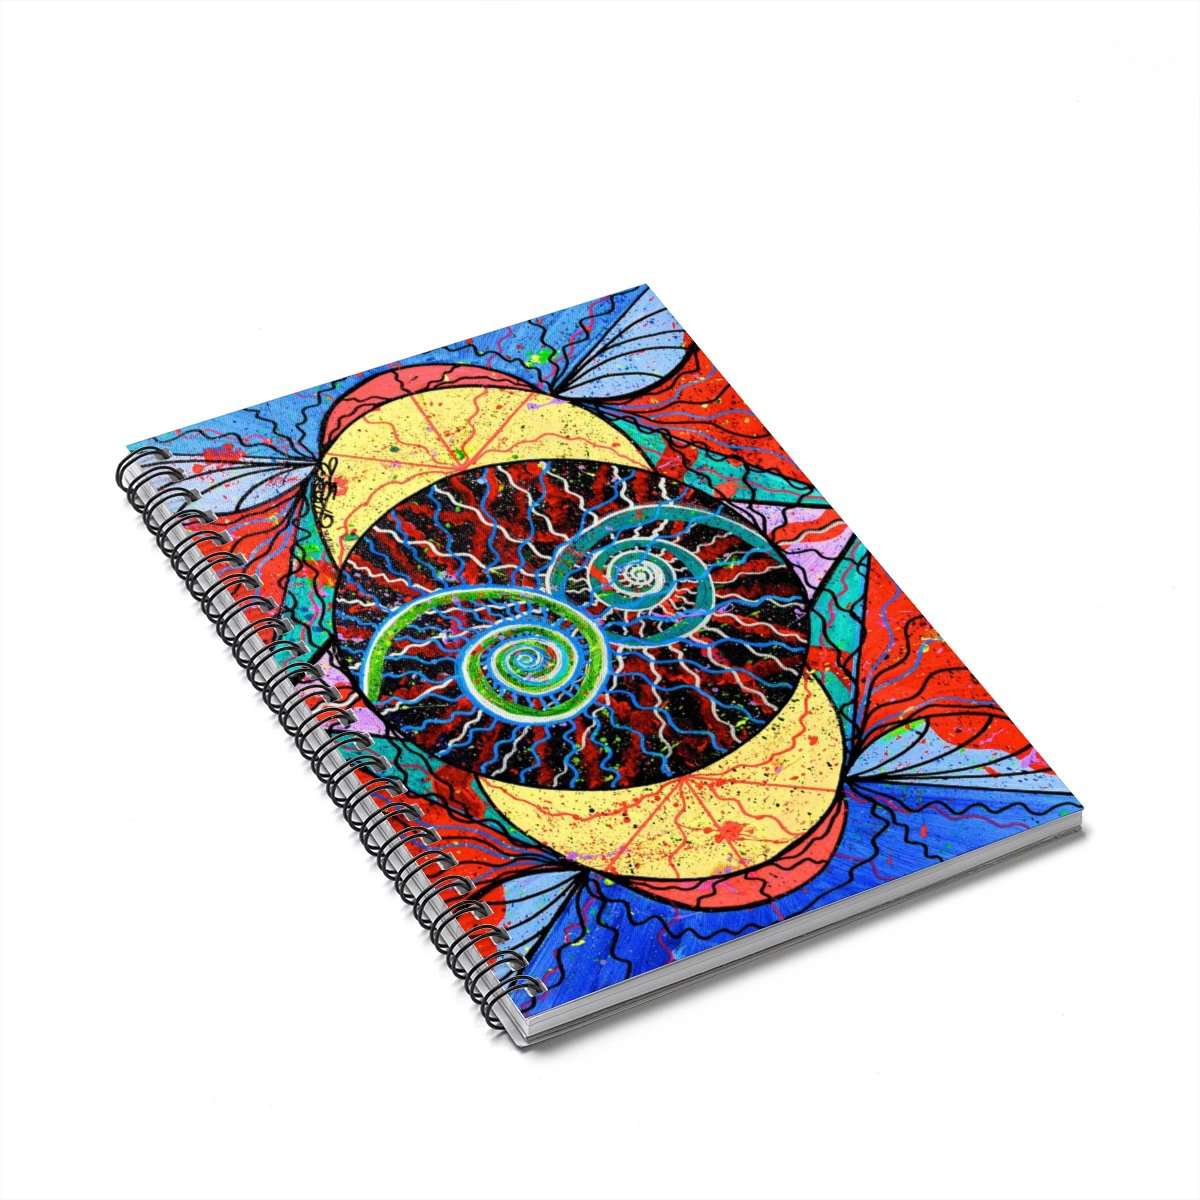 Inception - Spiral Notebook